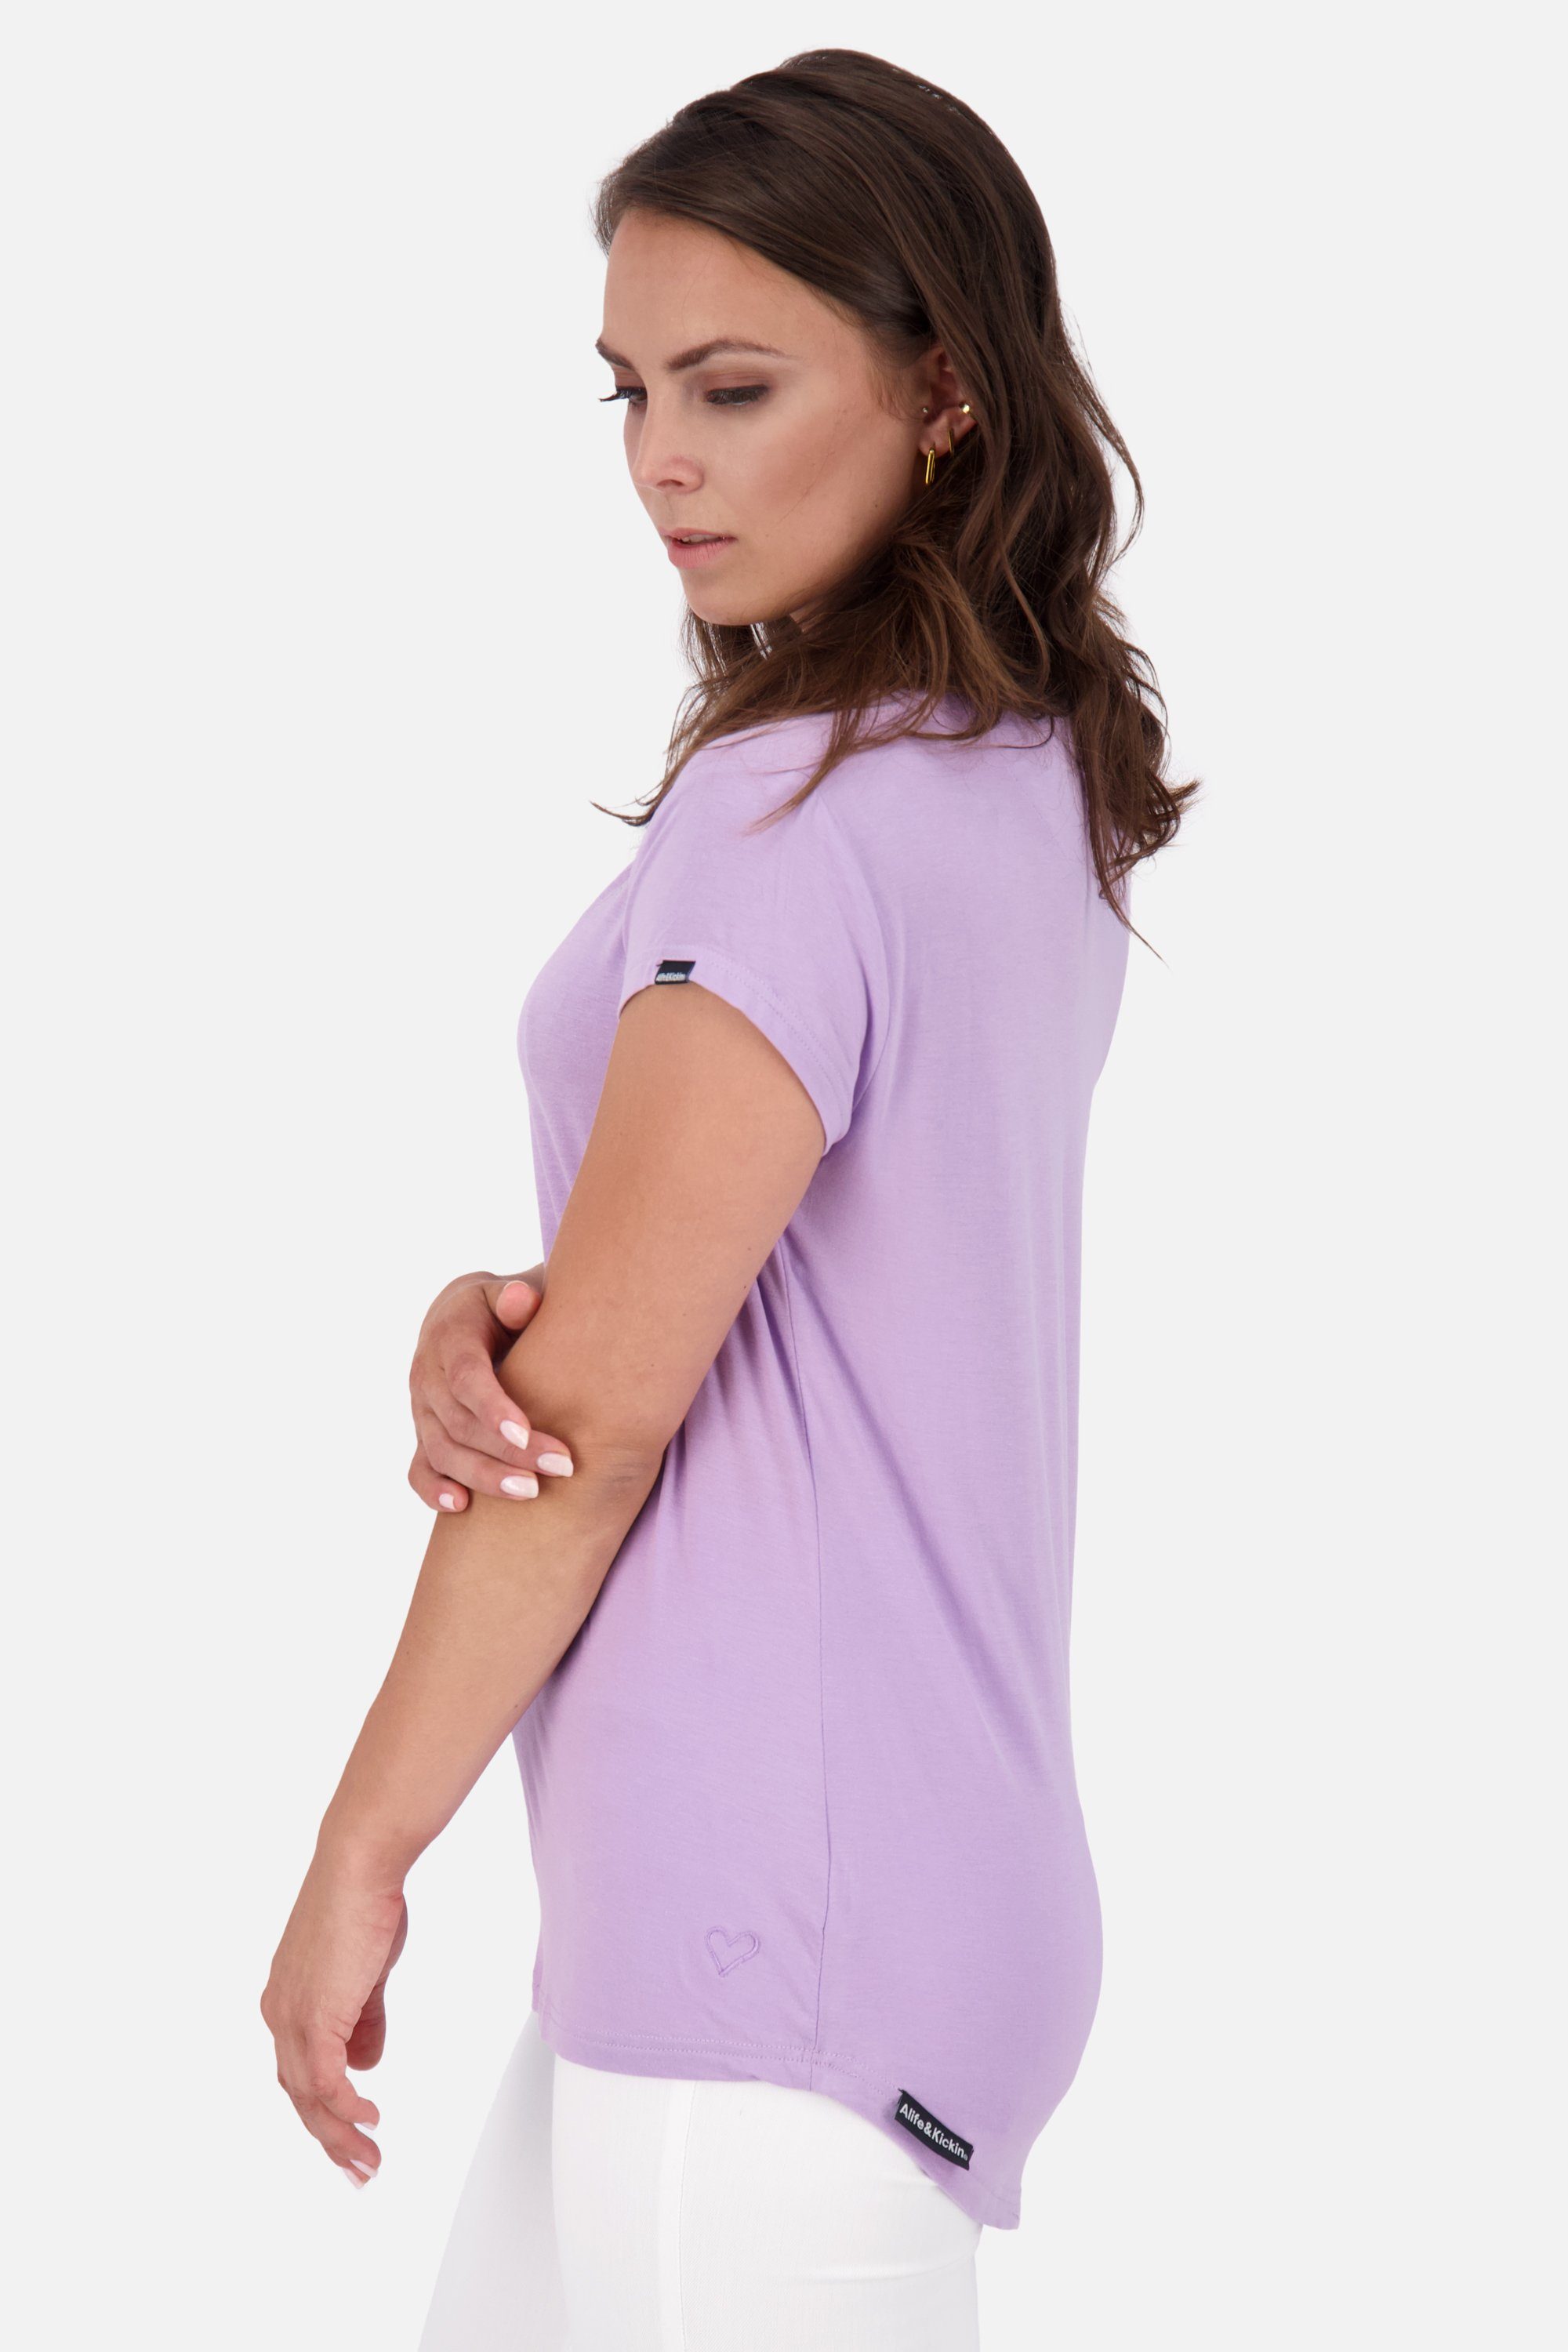 Alife & Kurzarmshirt, digital Kickin MimmyAK lavender Damen Rundhalsshirt Shirt A Shirt